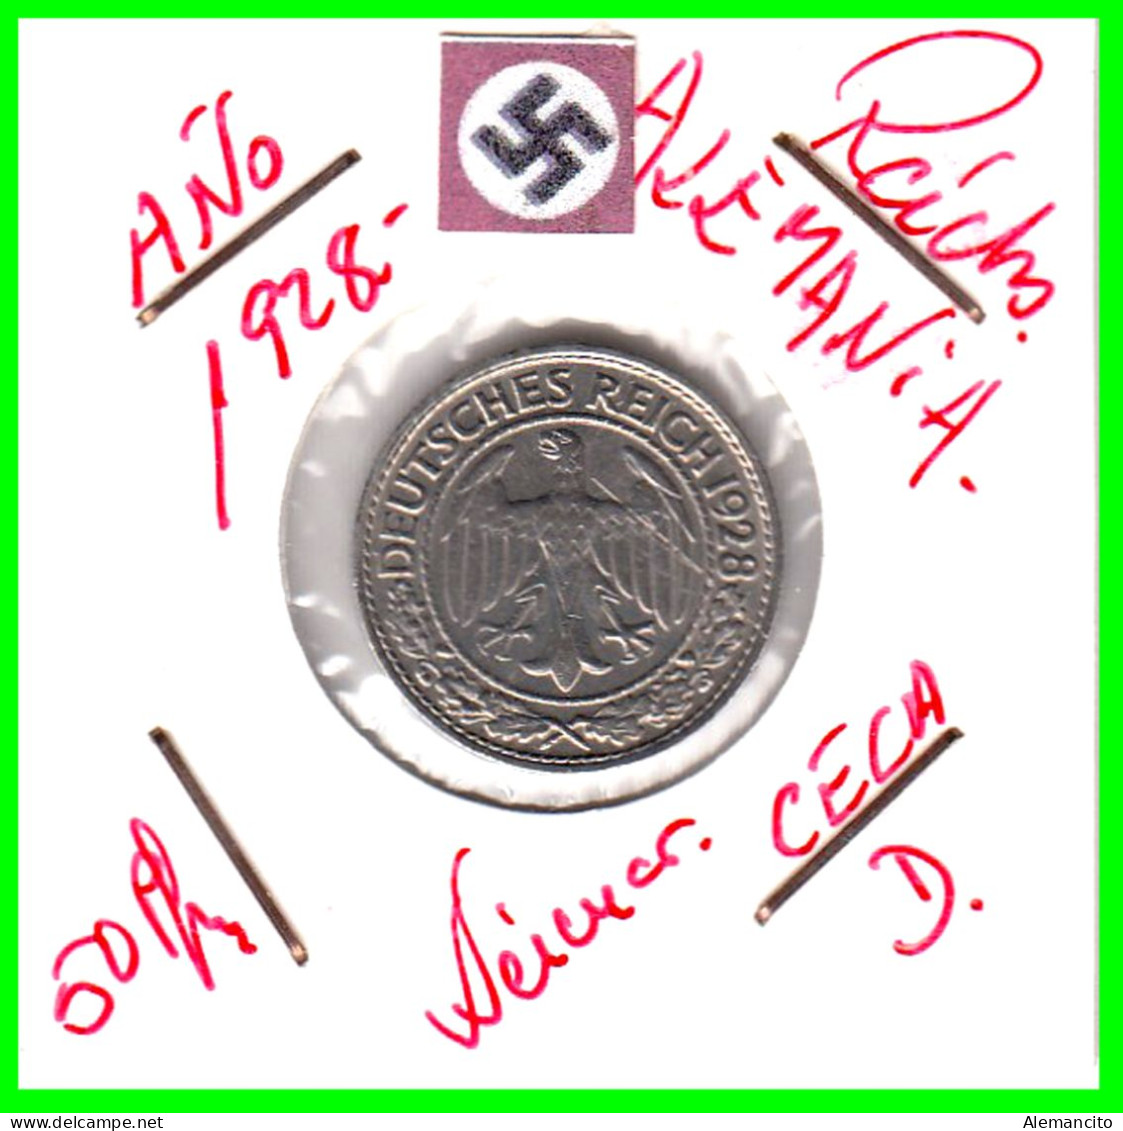 GERMANY REPÚBLICA DE WEIMAR 50 REICHSPFENNIG ( 1928 CECA - D )  (REICHSPFENNIG KM # 40 - 50 Renten- & 50 Reichspfennig